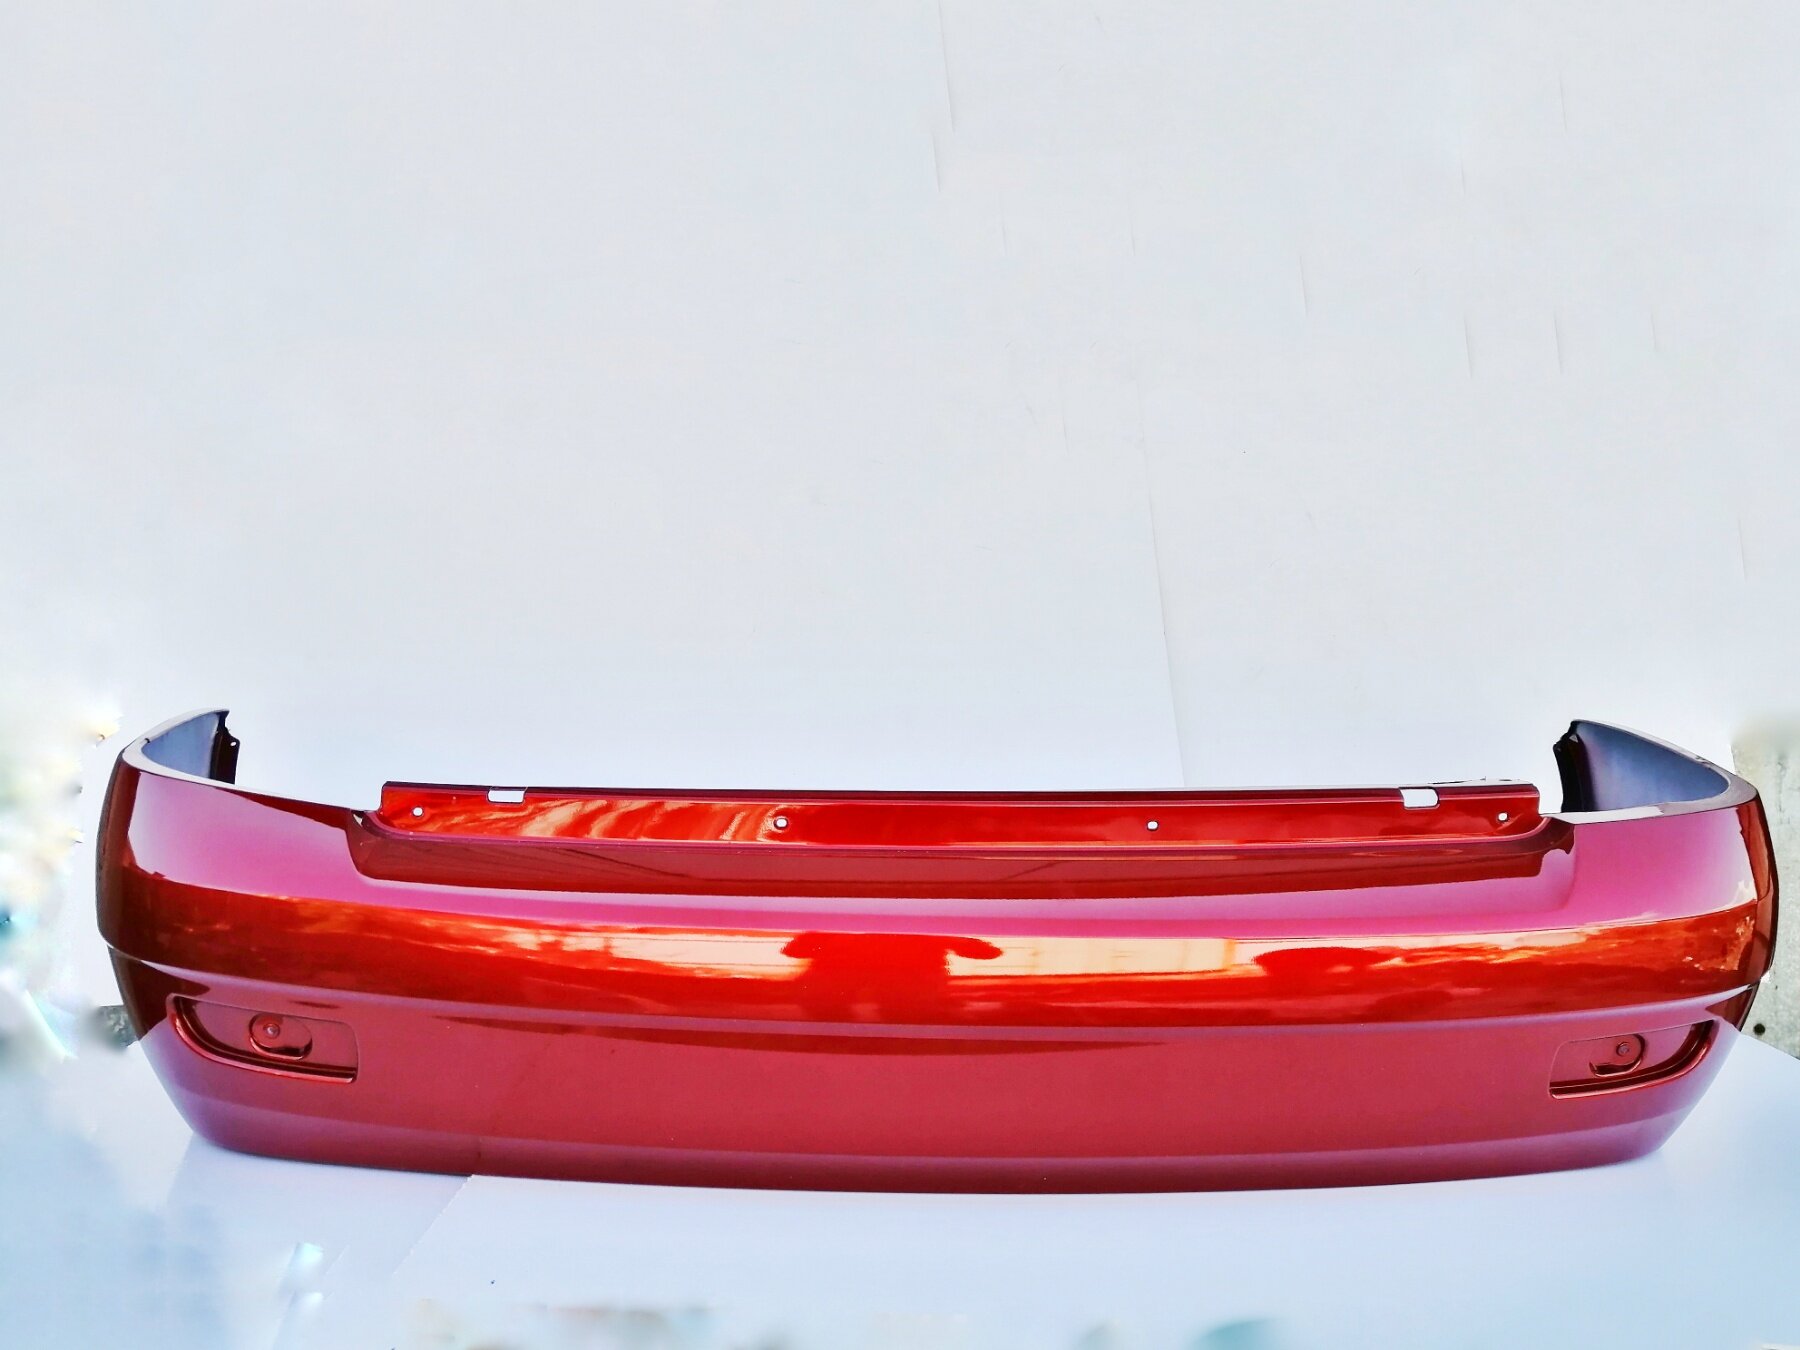 Бампер задний в цвет кузова Лада Приора 1 2170 седан 193 - Пламя - Красный